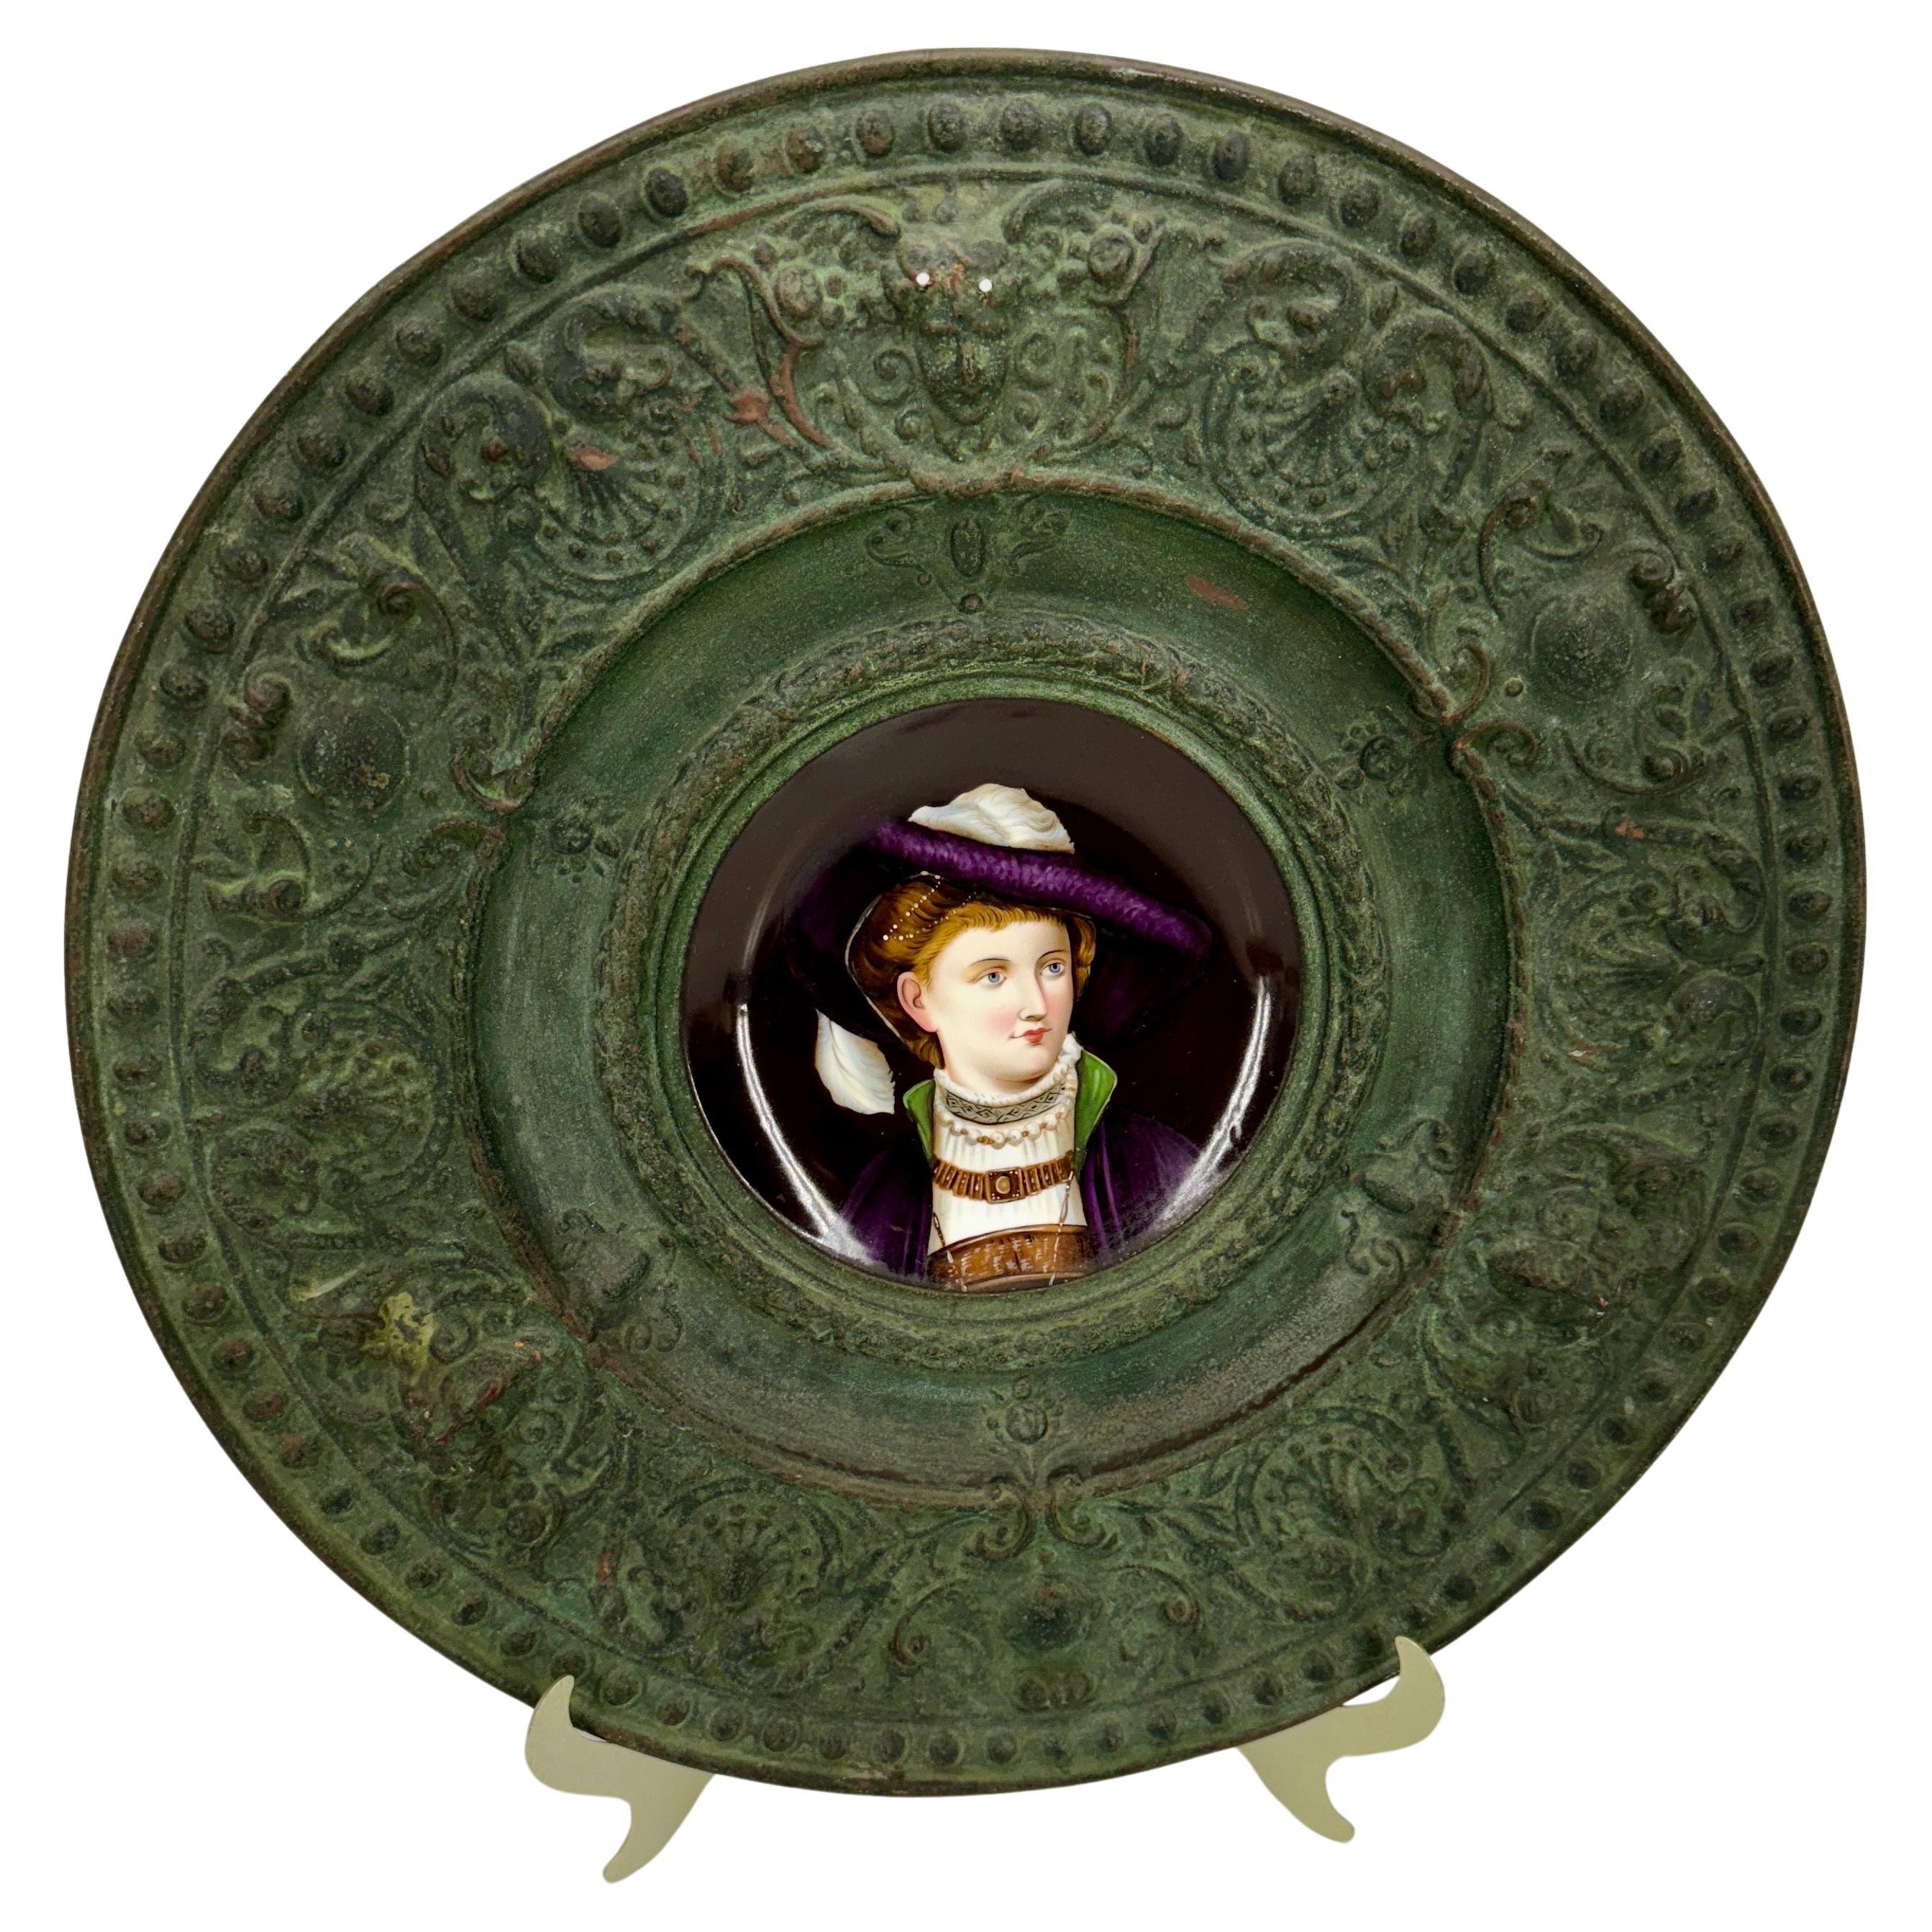 Porzellan-Kupfer-Wandapplikation einer Dame aus dem 18. Jahrhundert, Deutschland.
Der Durchmesser des Porzellans beträgt 5,25 Zoll
